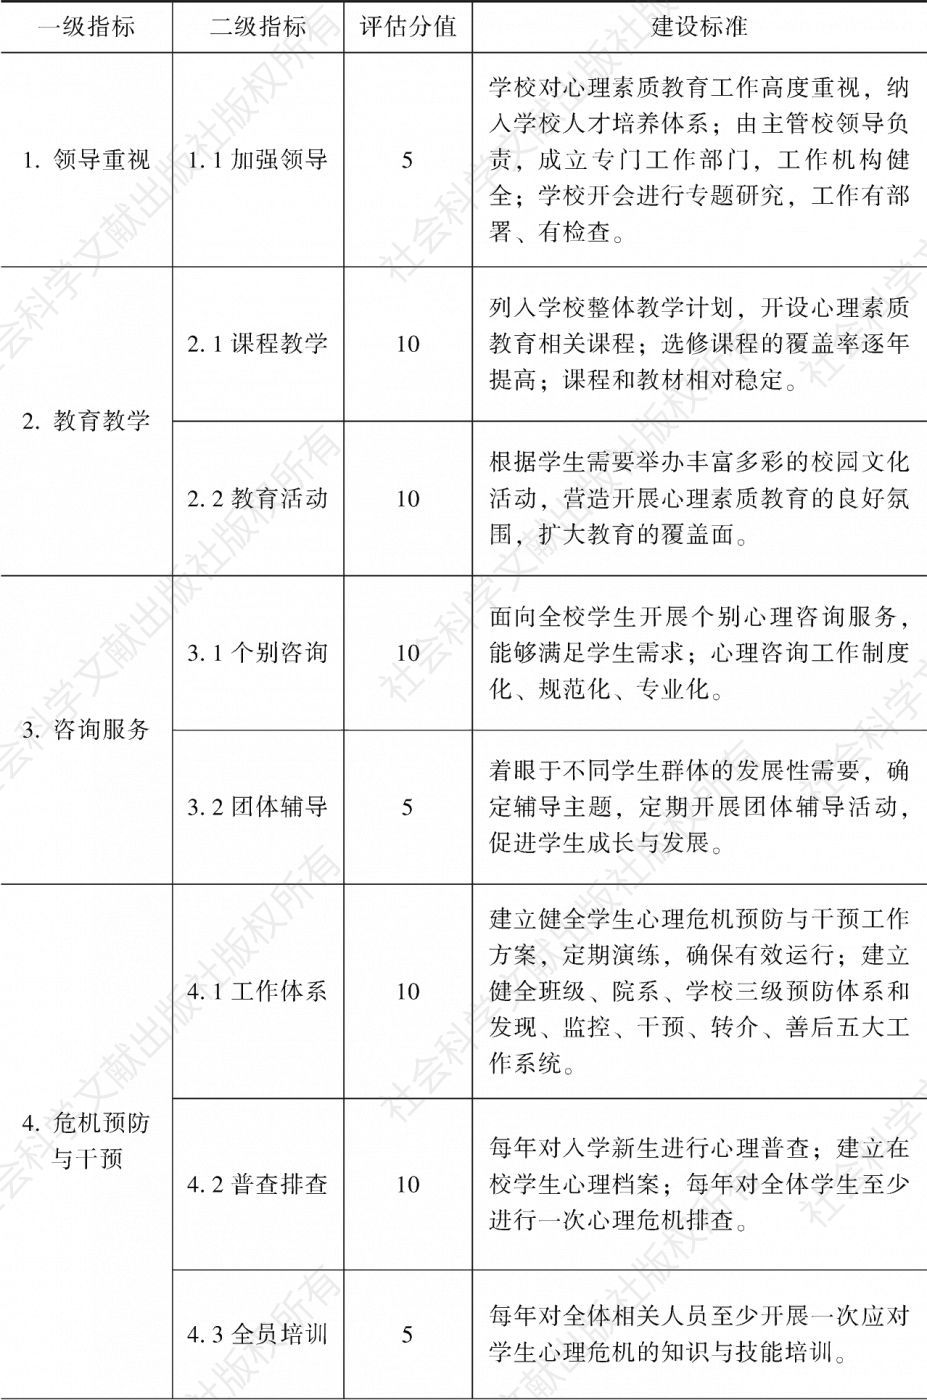 北京高校学生心理素质教育工作建设与评估标准